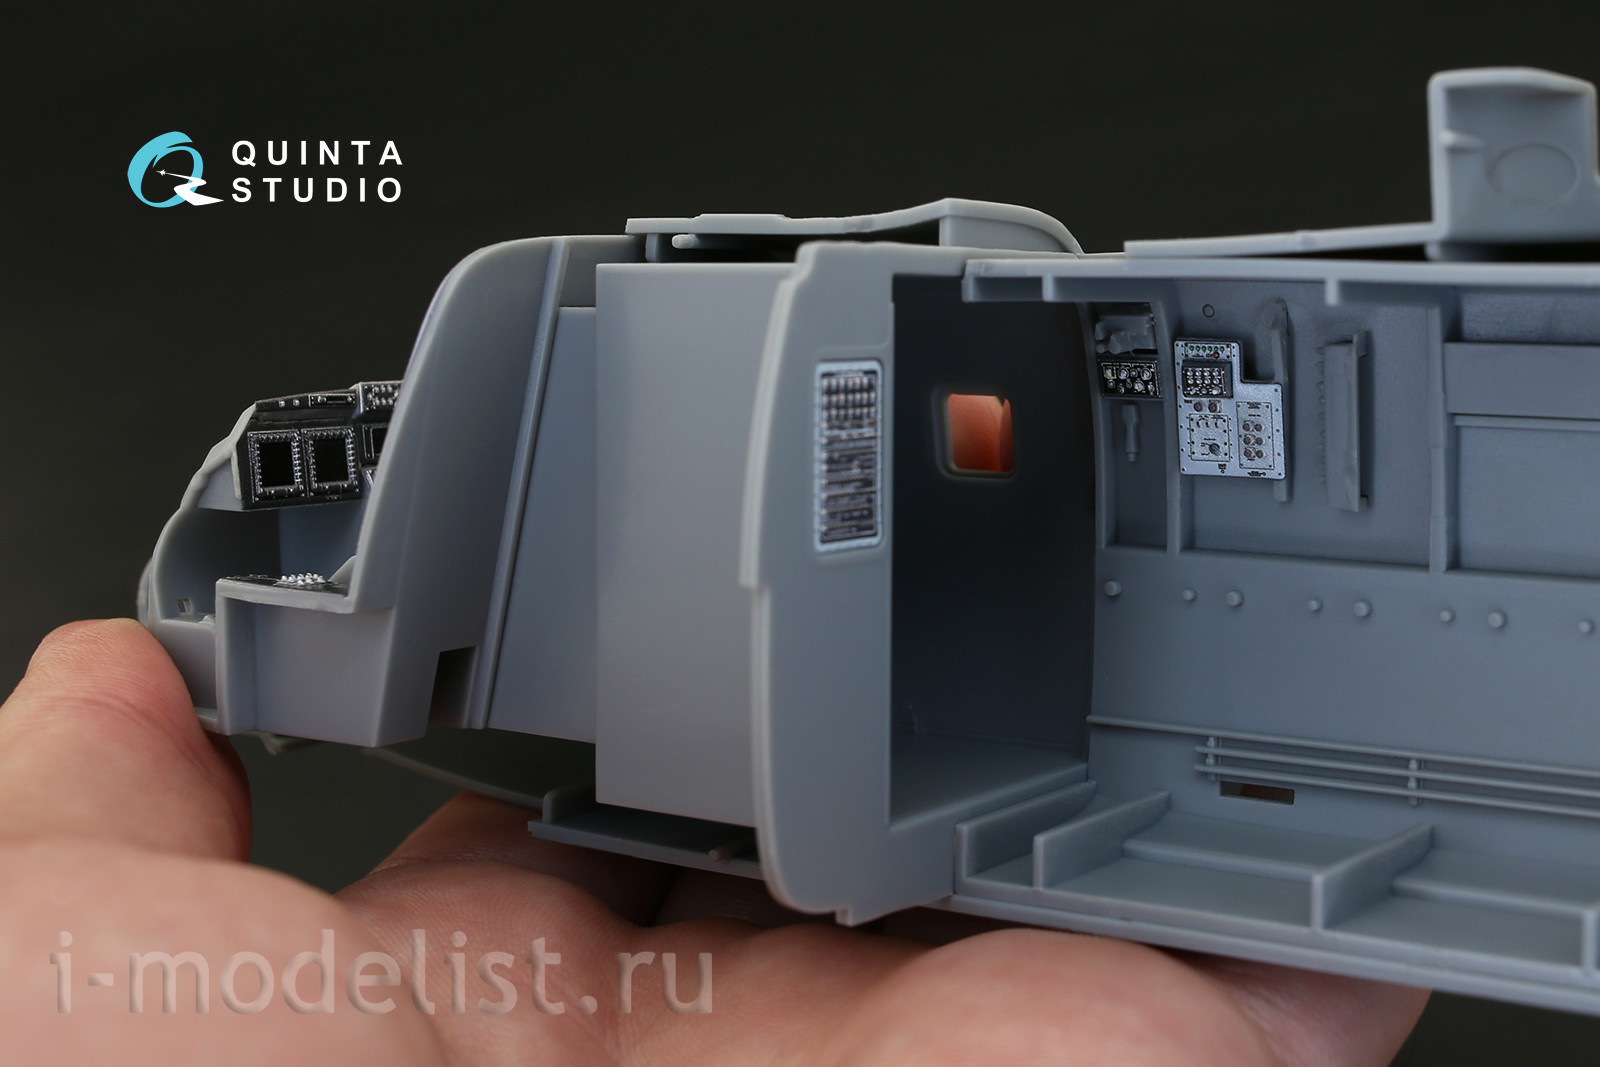 QD48182 Quinta Studio 1/48 3D Декаль интерьера кабины MV-22 Osprey (для модели HobbyBoss)